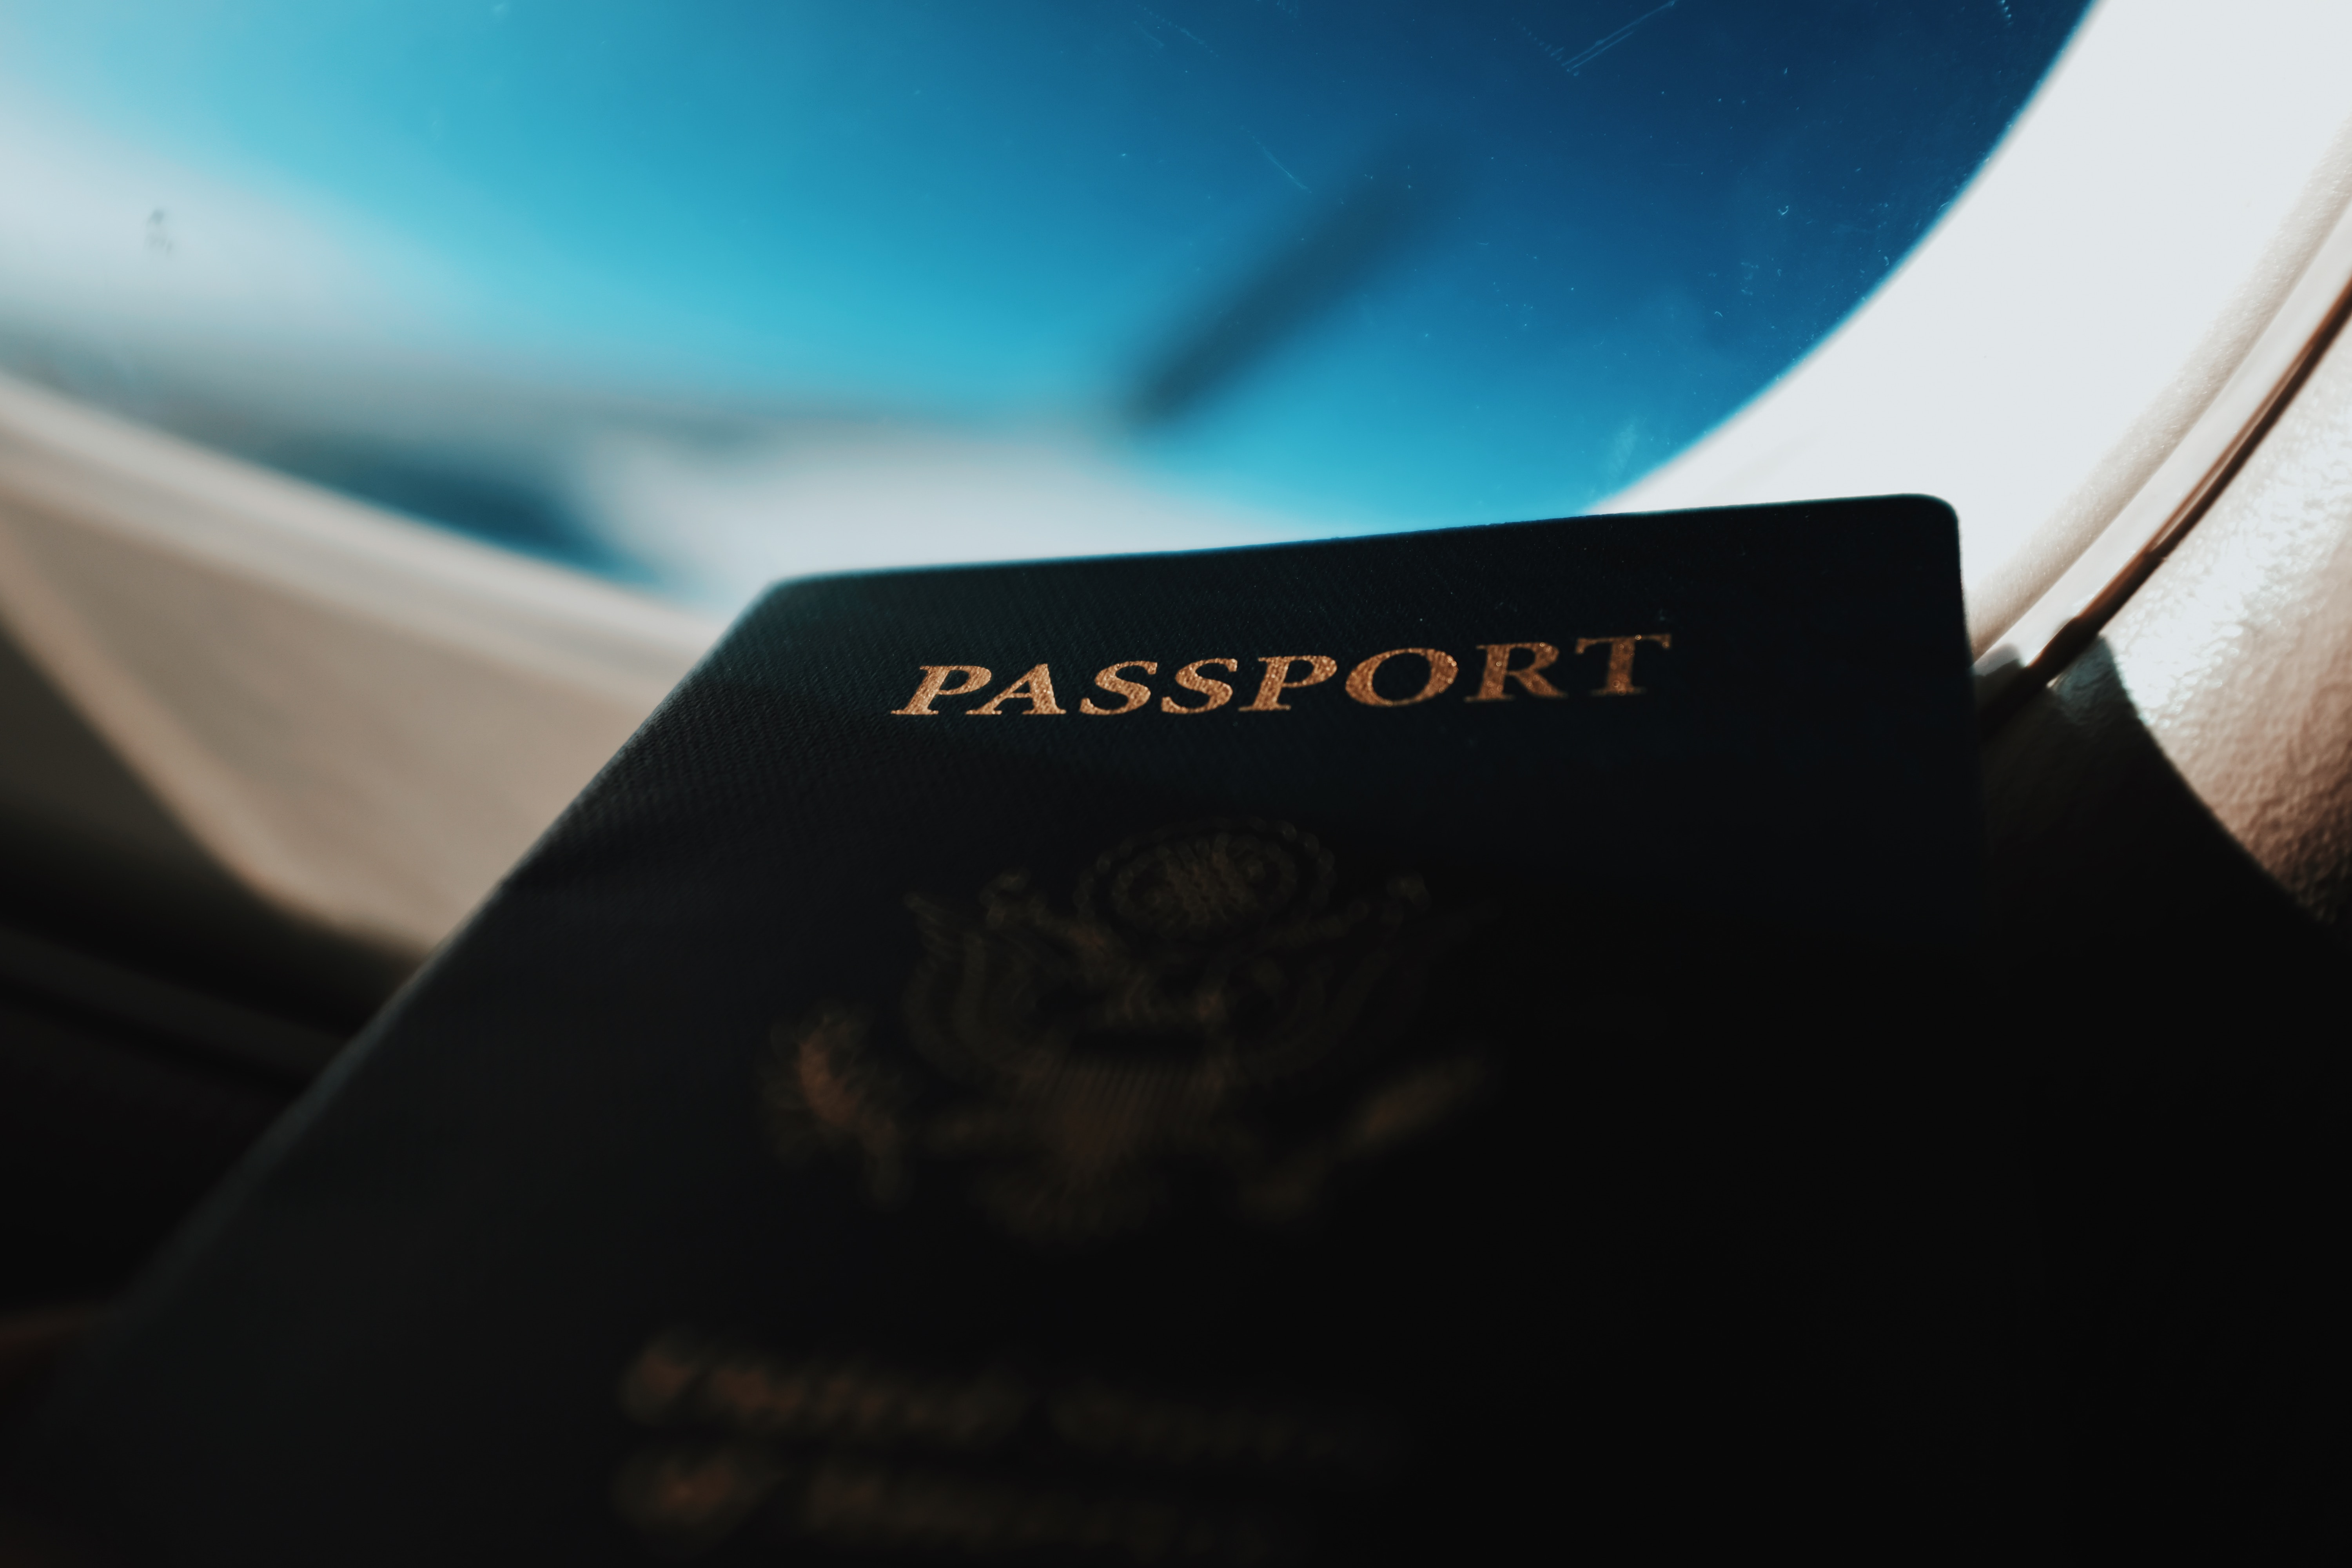 A passport inside an airplane